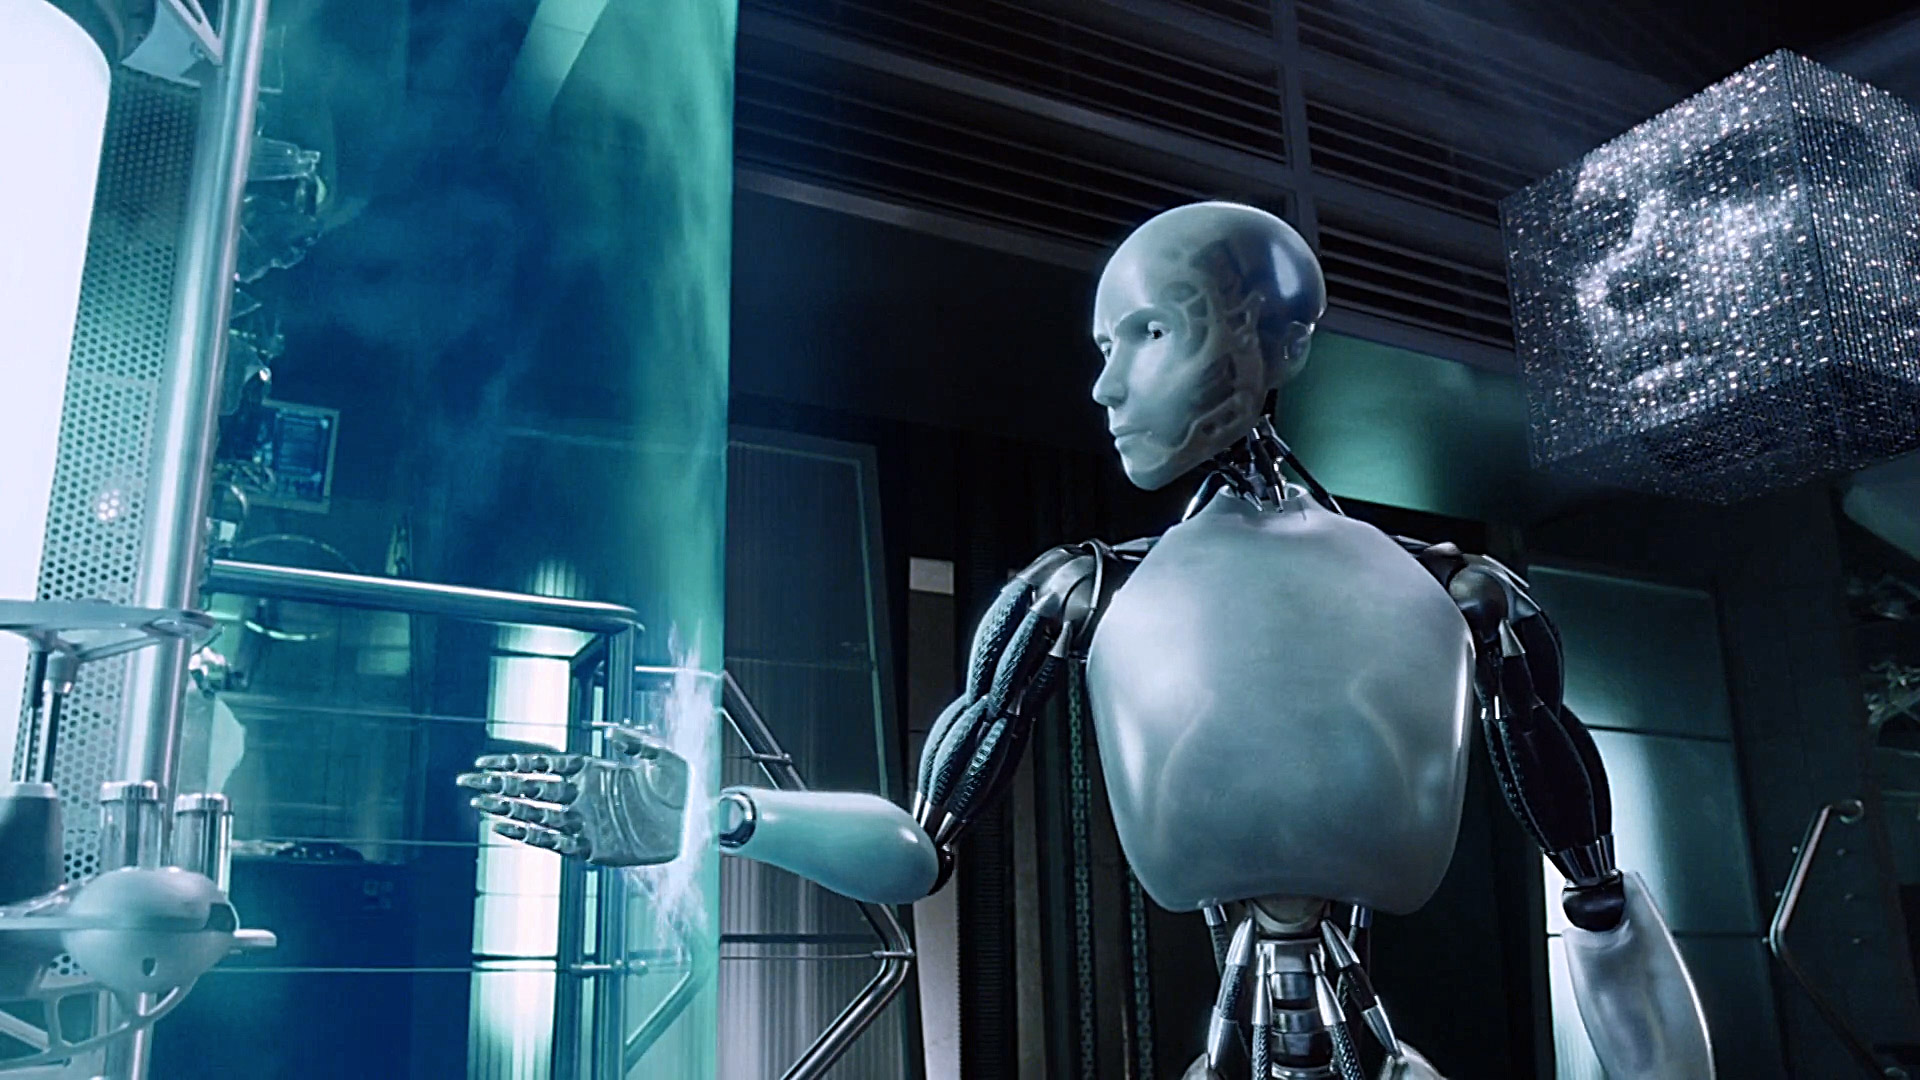 Кадр из фильма "Я, робот" (олды здесь?)